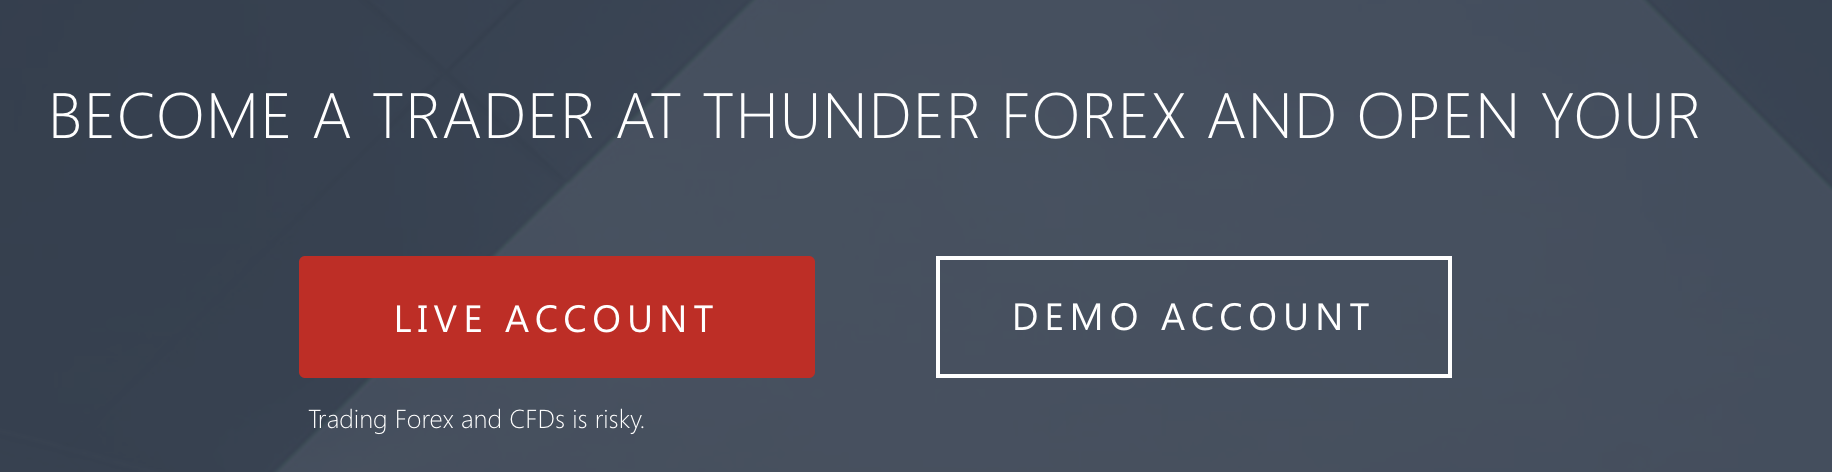 Thunder forex ile bir demo hesabı ile işlem yapma imkanı